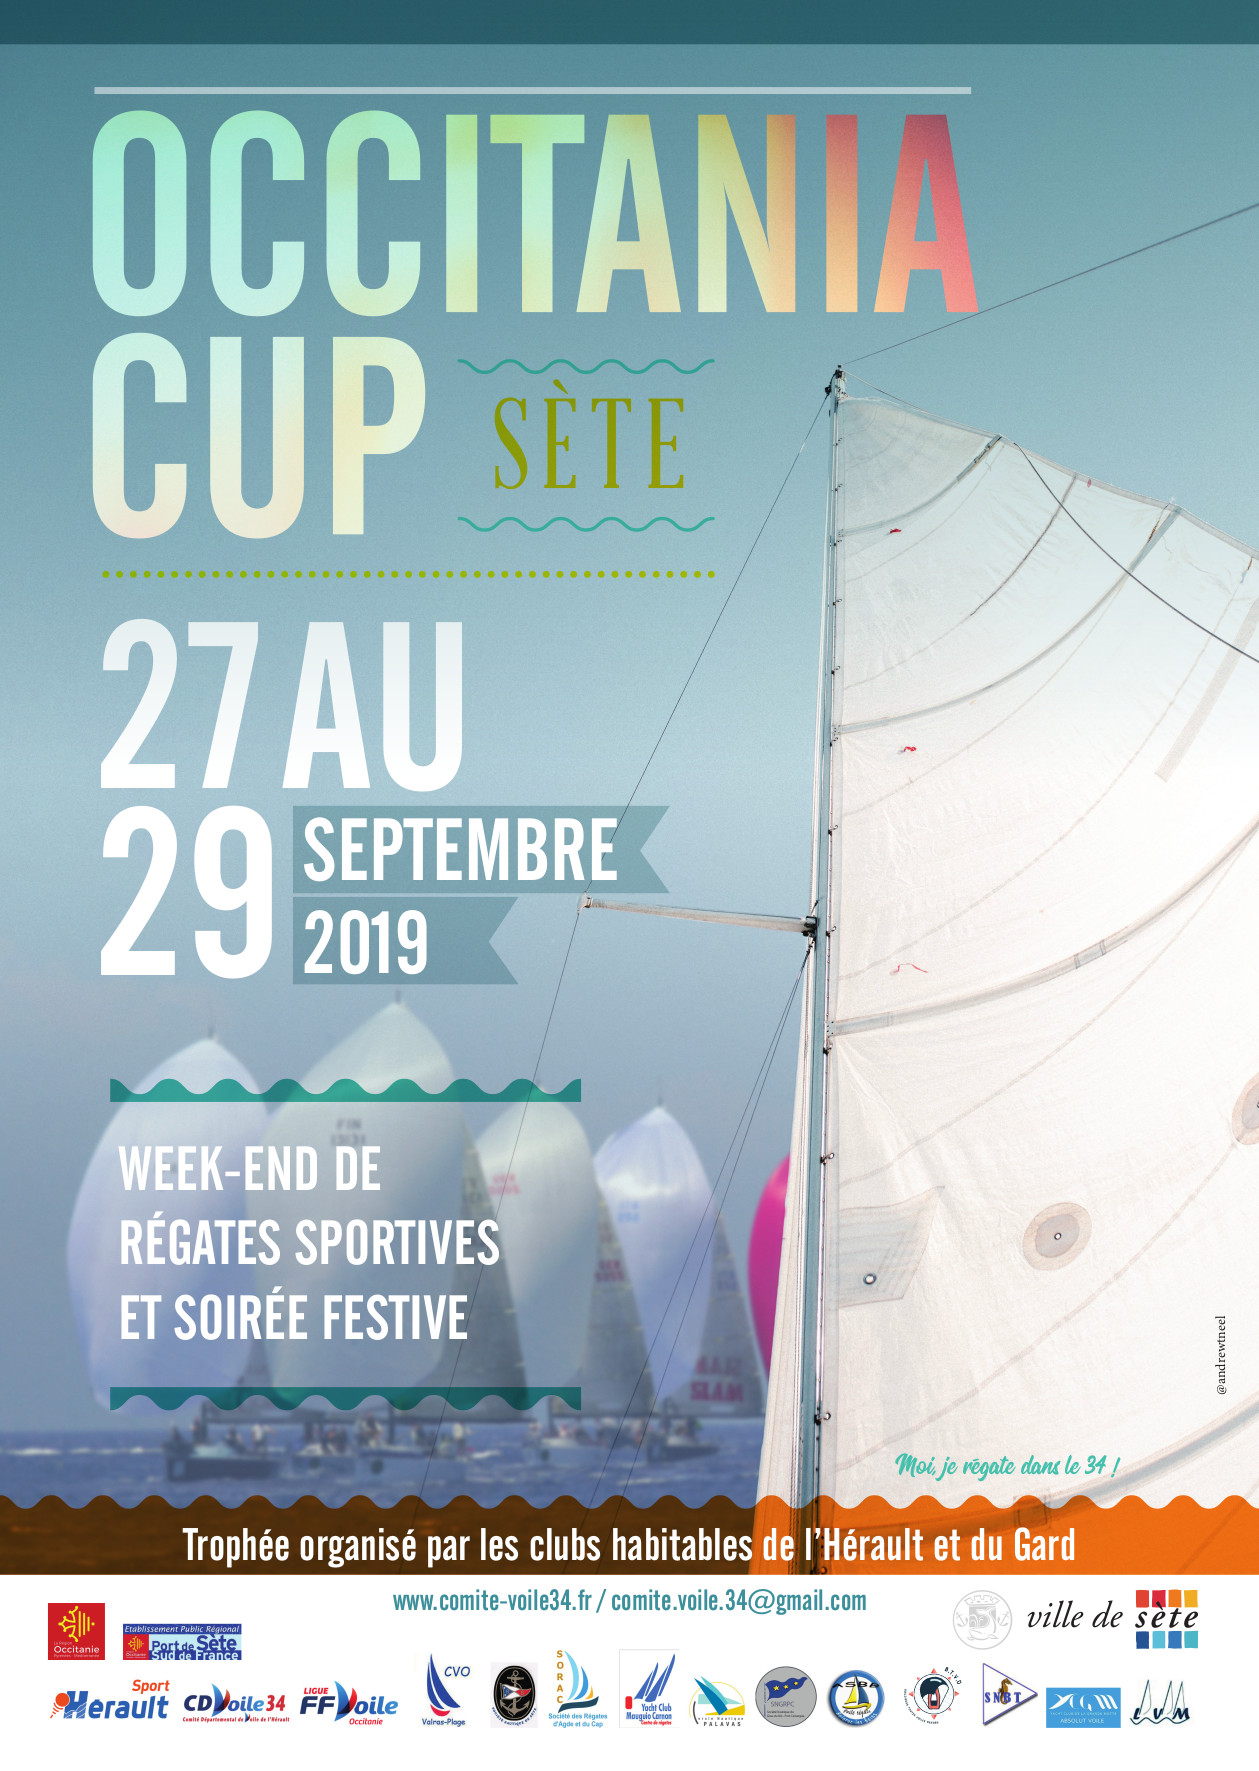 You are currently viewing L’Occitania cup en approche : deuxième édition à Sète les 27, 28 et 29 septembre 2019